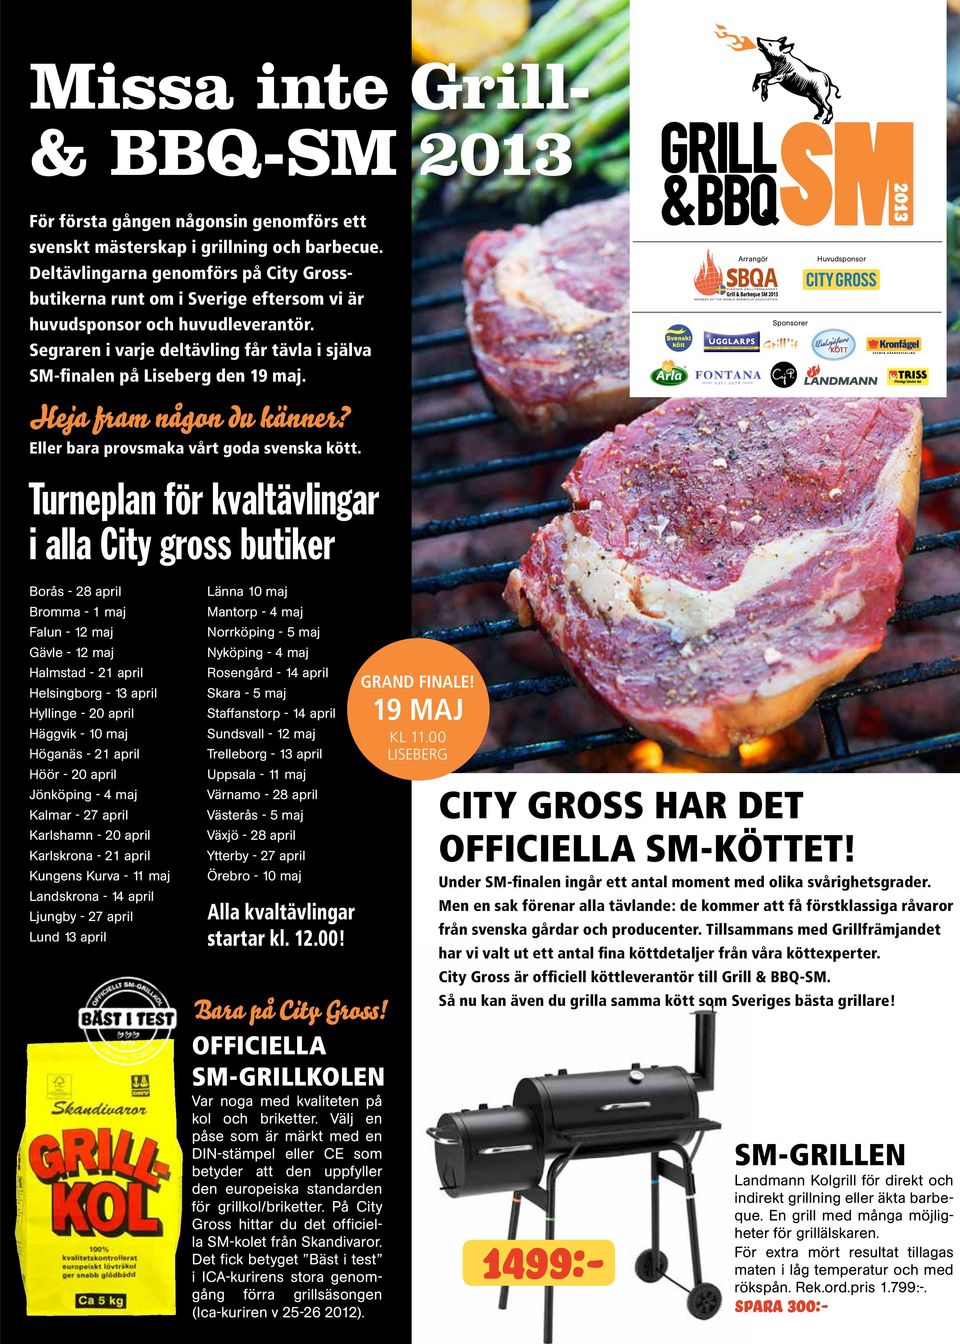 Heja fram någon du känner? Eller bara provsmaka vårt goda svenska kött.